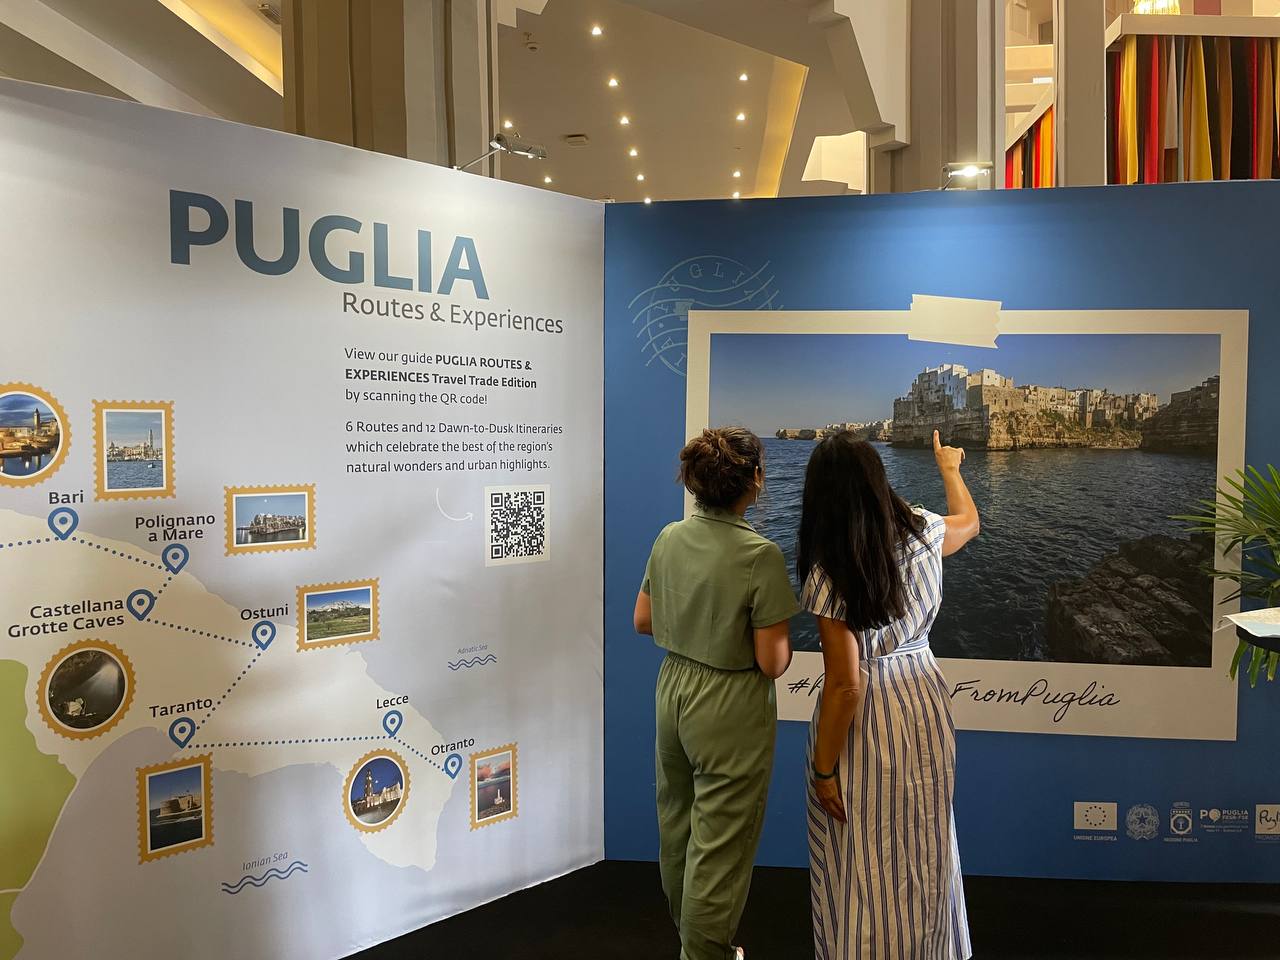 Galleria Turismo di alta gamma, Puglia protagonista al “Pure Life Experiences” di Marrakech, evento internazionale tra i più prestigiosi del settore - Diapositiva 15 di 16